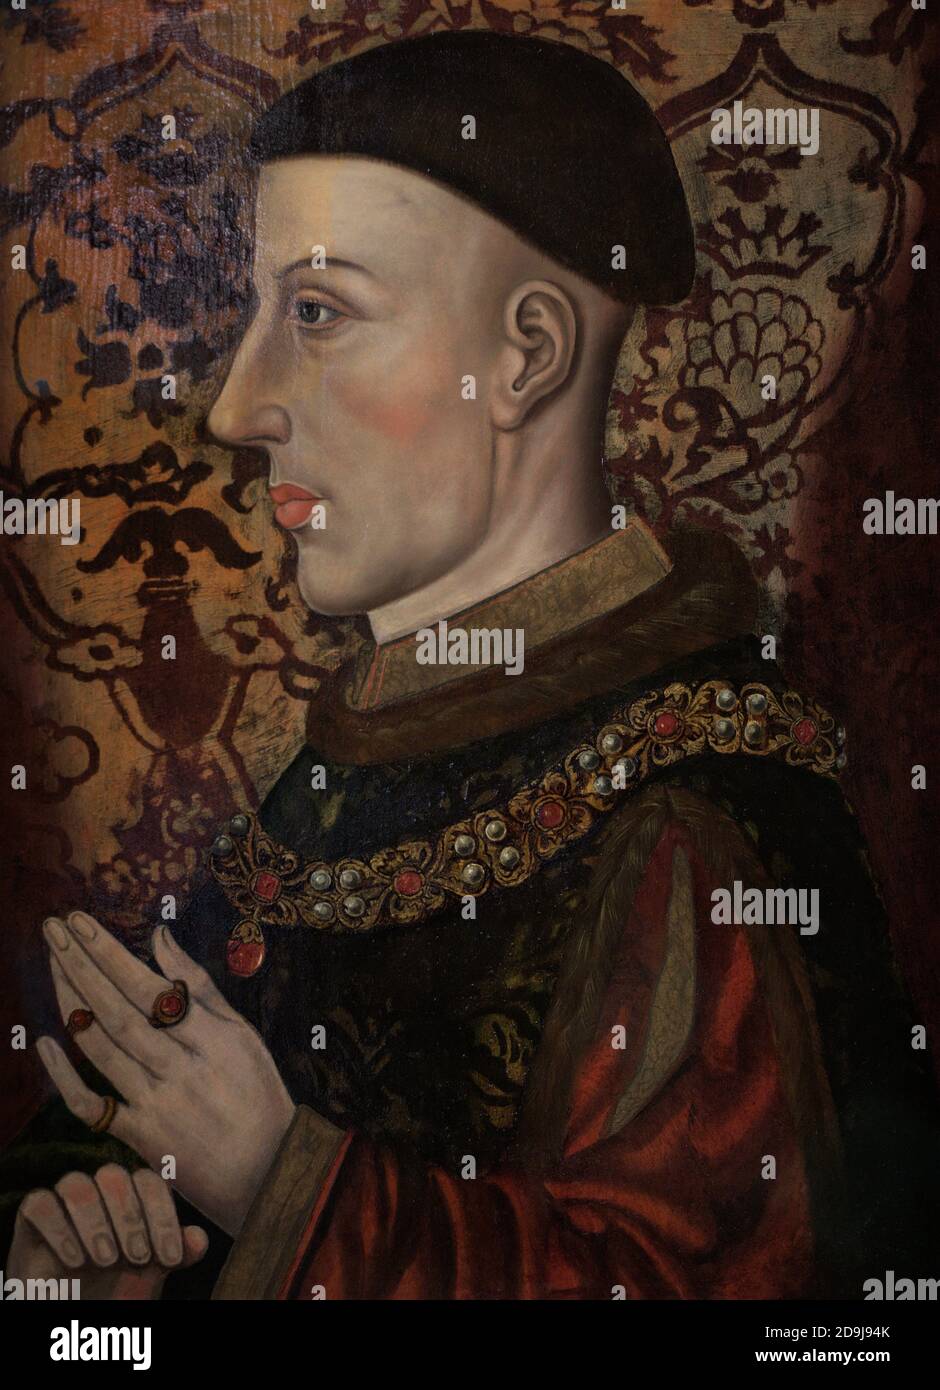 Enrique V (c.1387-1422) rey de Inglaterra desde 1413 hasta 1422. Retrato de un artista no identificado. Aceite en el panel. Finales del siglo 16-principios del siglo 17. Galería Nacional de Retratos. Londres, Inglaterra, Reino Unido. Foto de stock